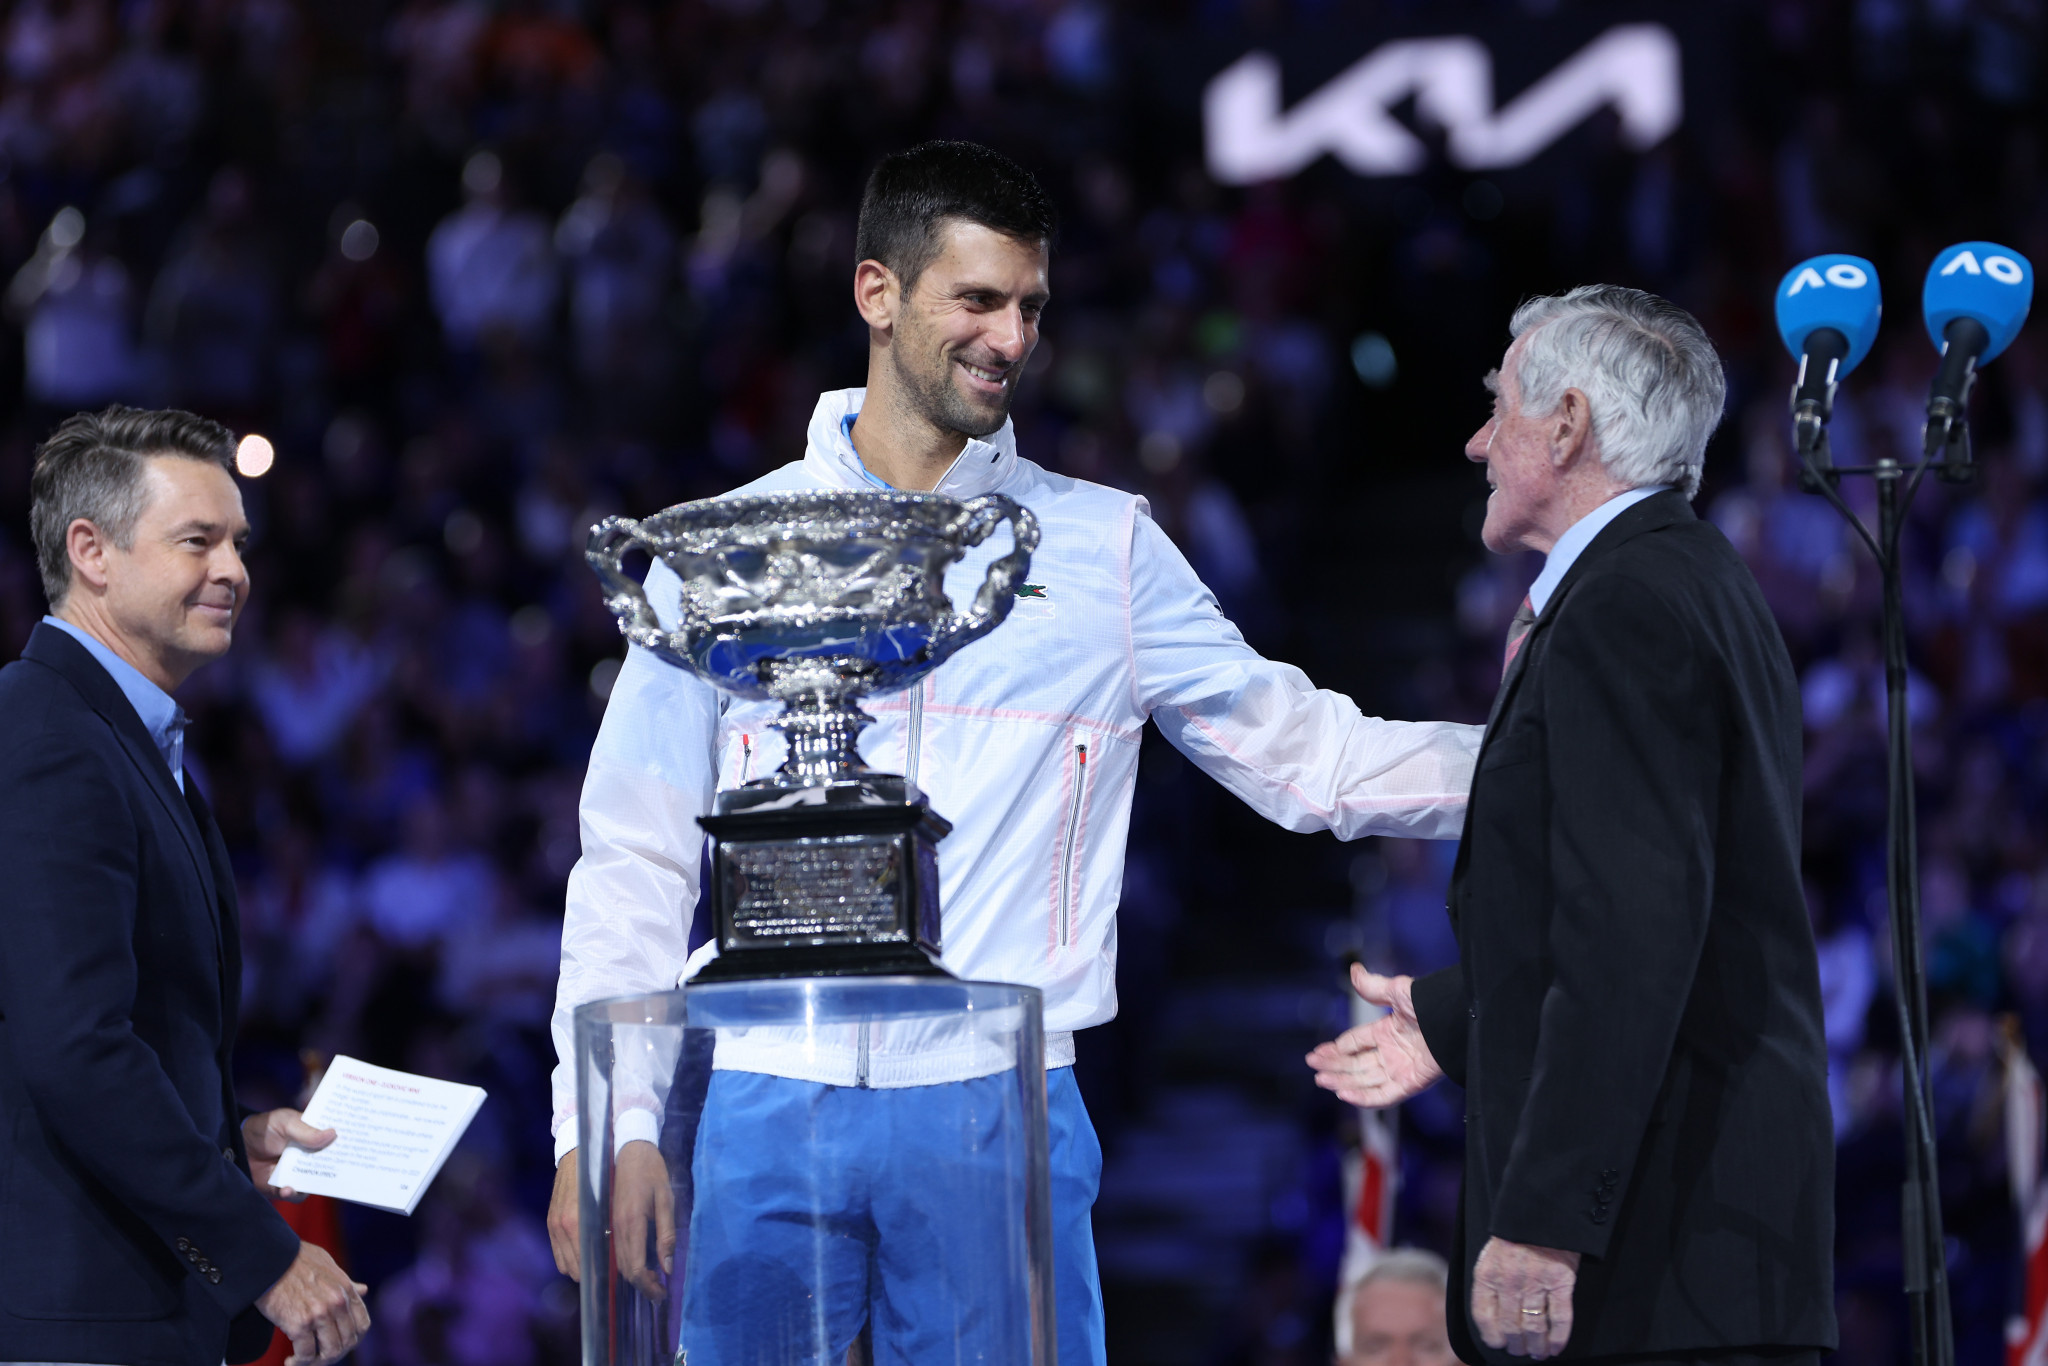 King of Melbourne Park Djokovic wins tenth Australian Open men's singles title